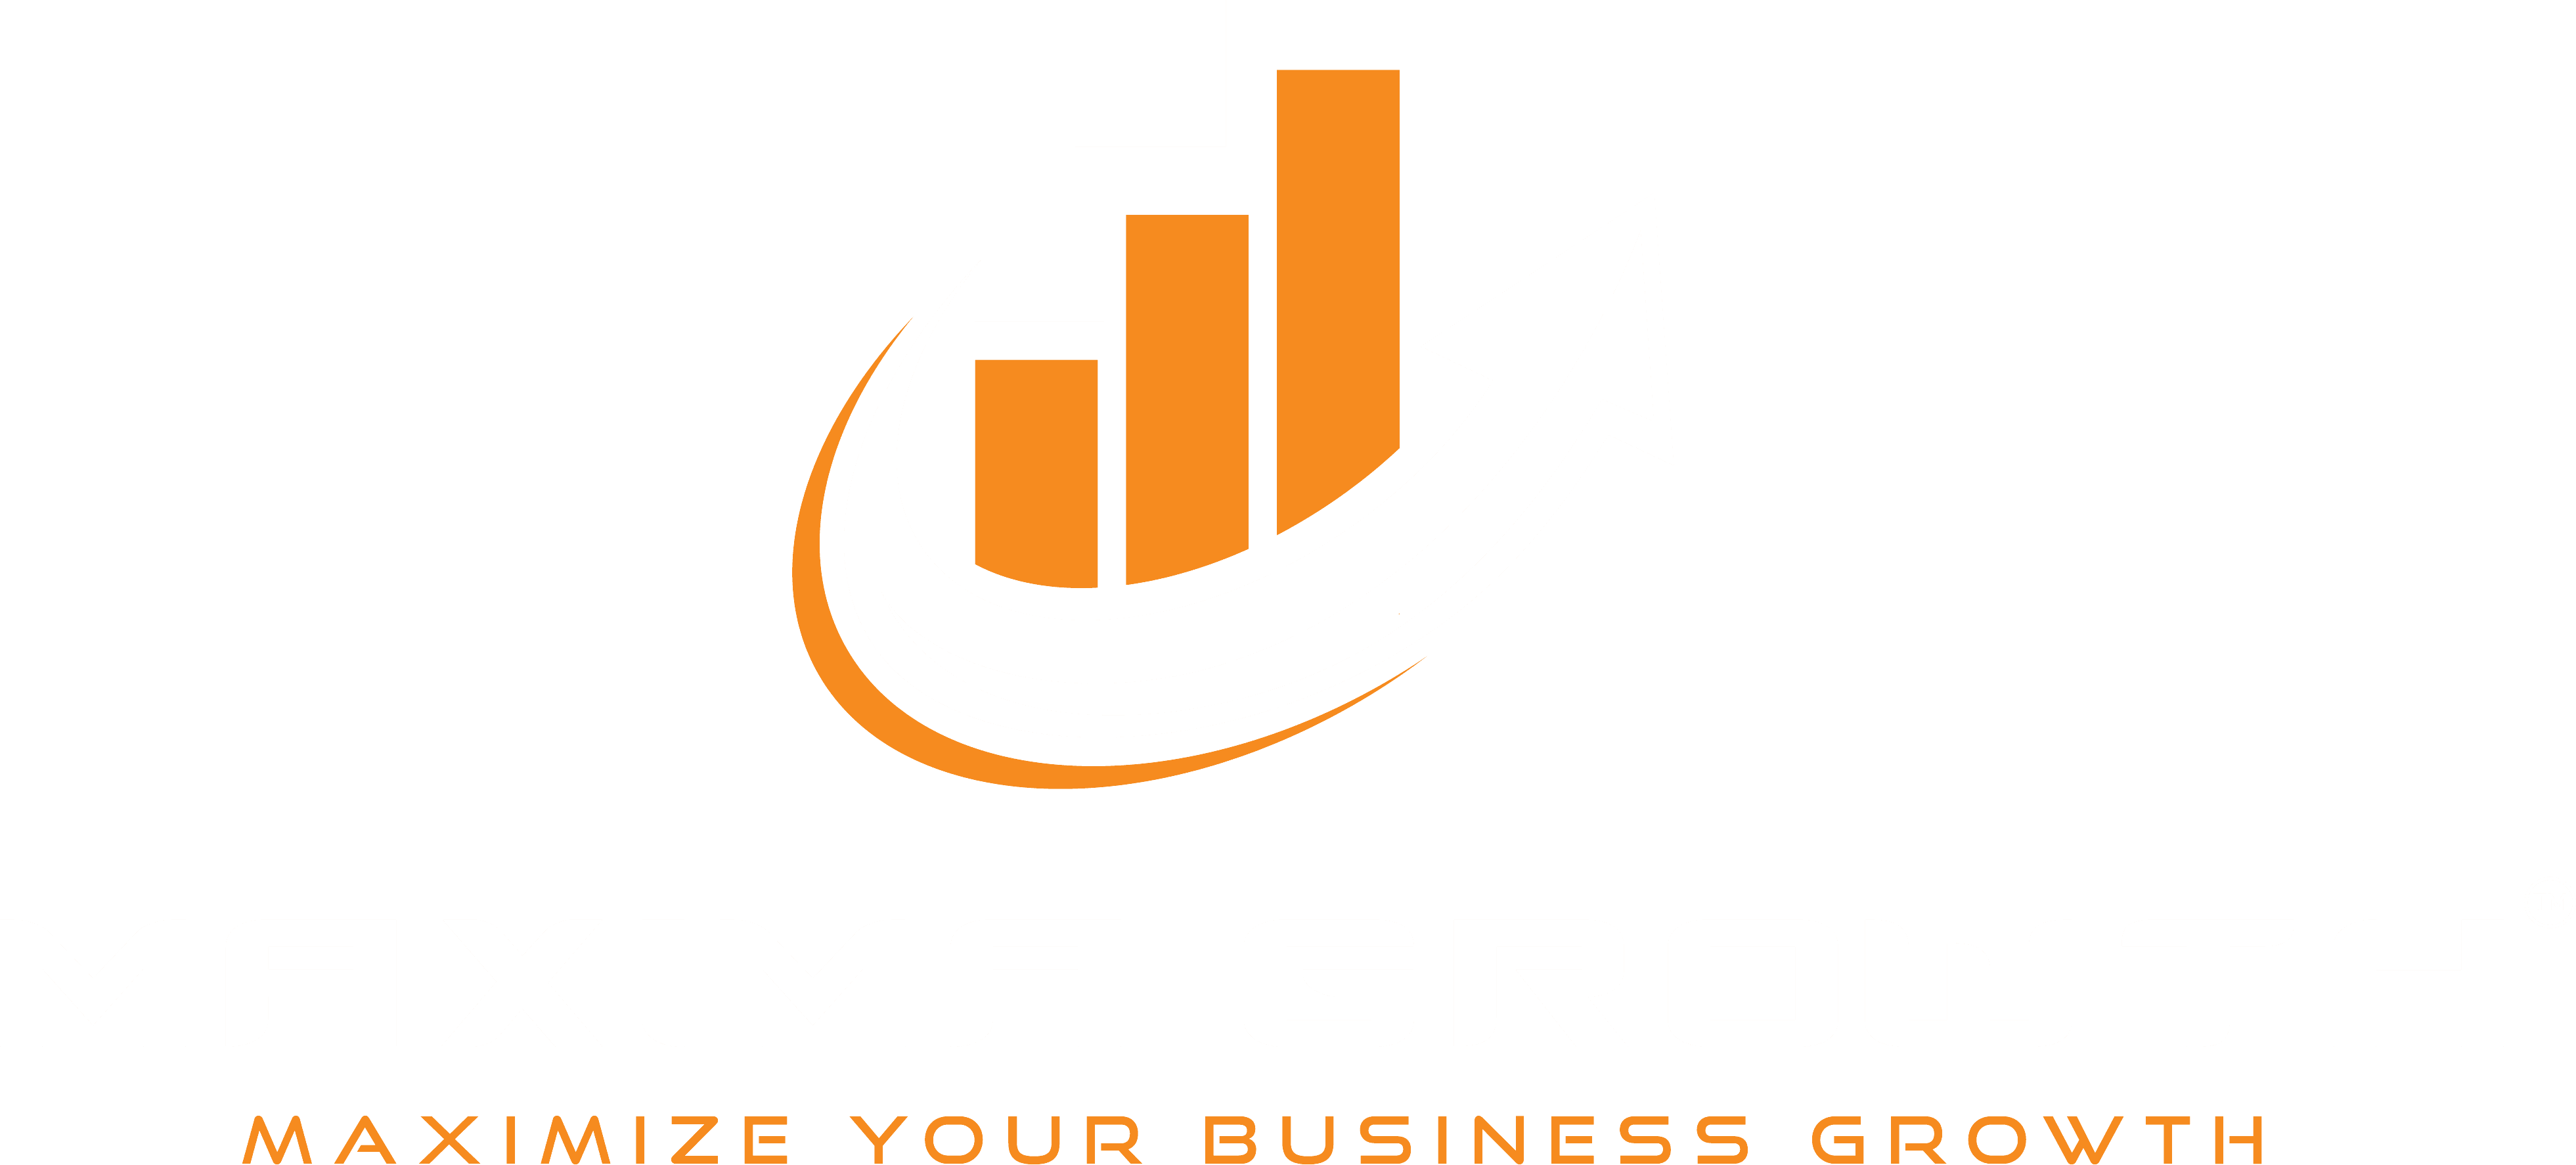 MAXIMA GROWTH™